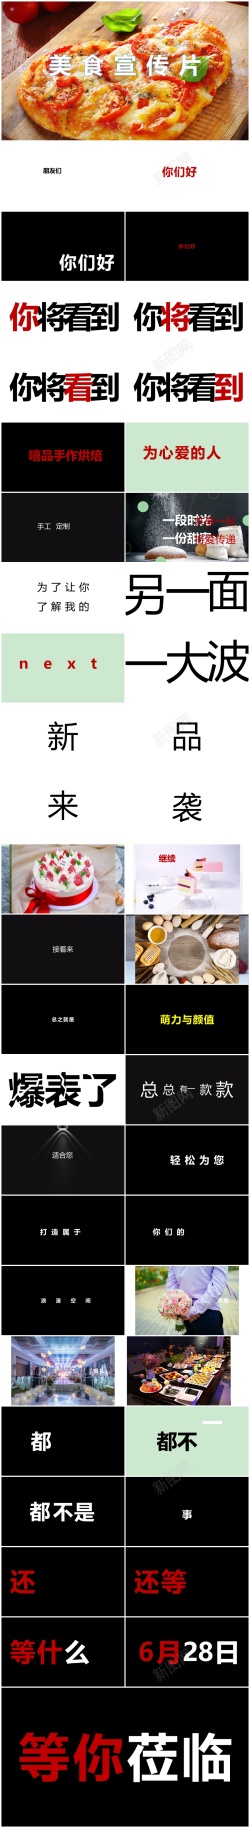 生煎包美食宣传86酷炫快闪美食宣传片ppt模板